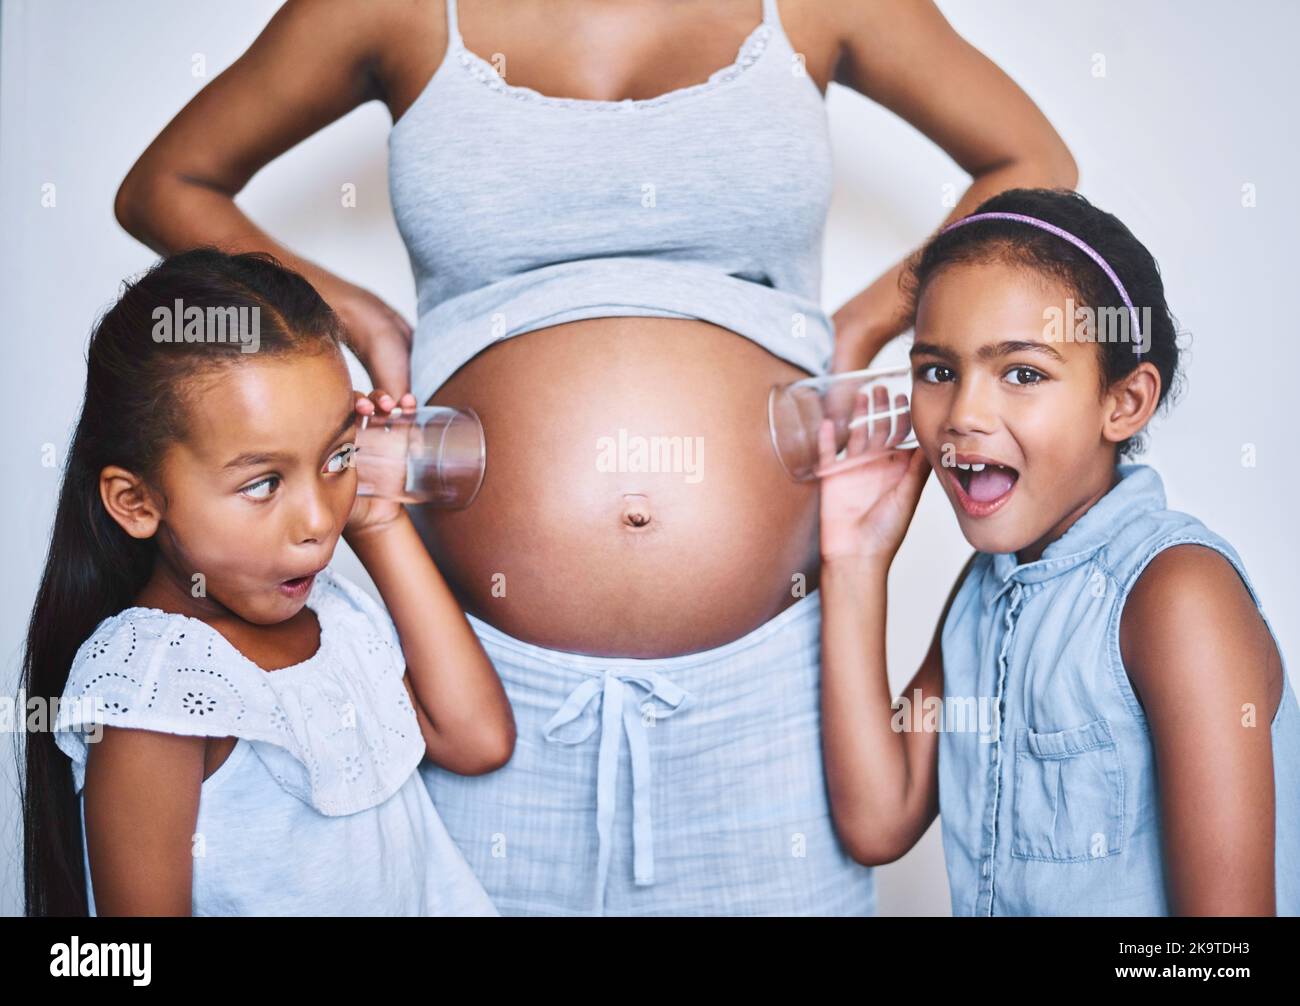 Ich habe etwas gehört. Portrait von zwei fröhlichen kleinen Mädchen, die neben ihrer Mutter stehen, während sie jeweils ein Glas auf ihren schwanger Bauch legen, um zuzuhören Stockfoto